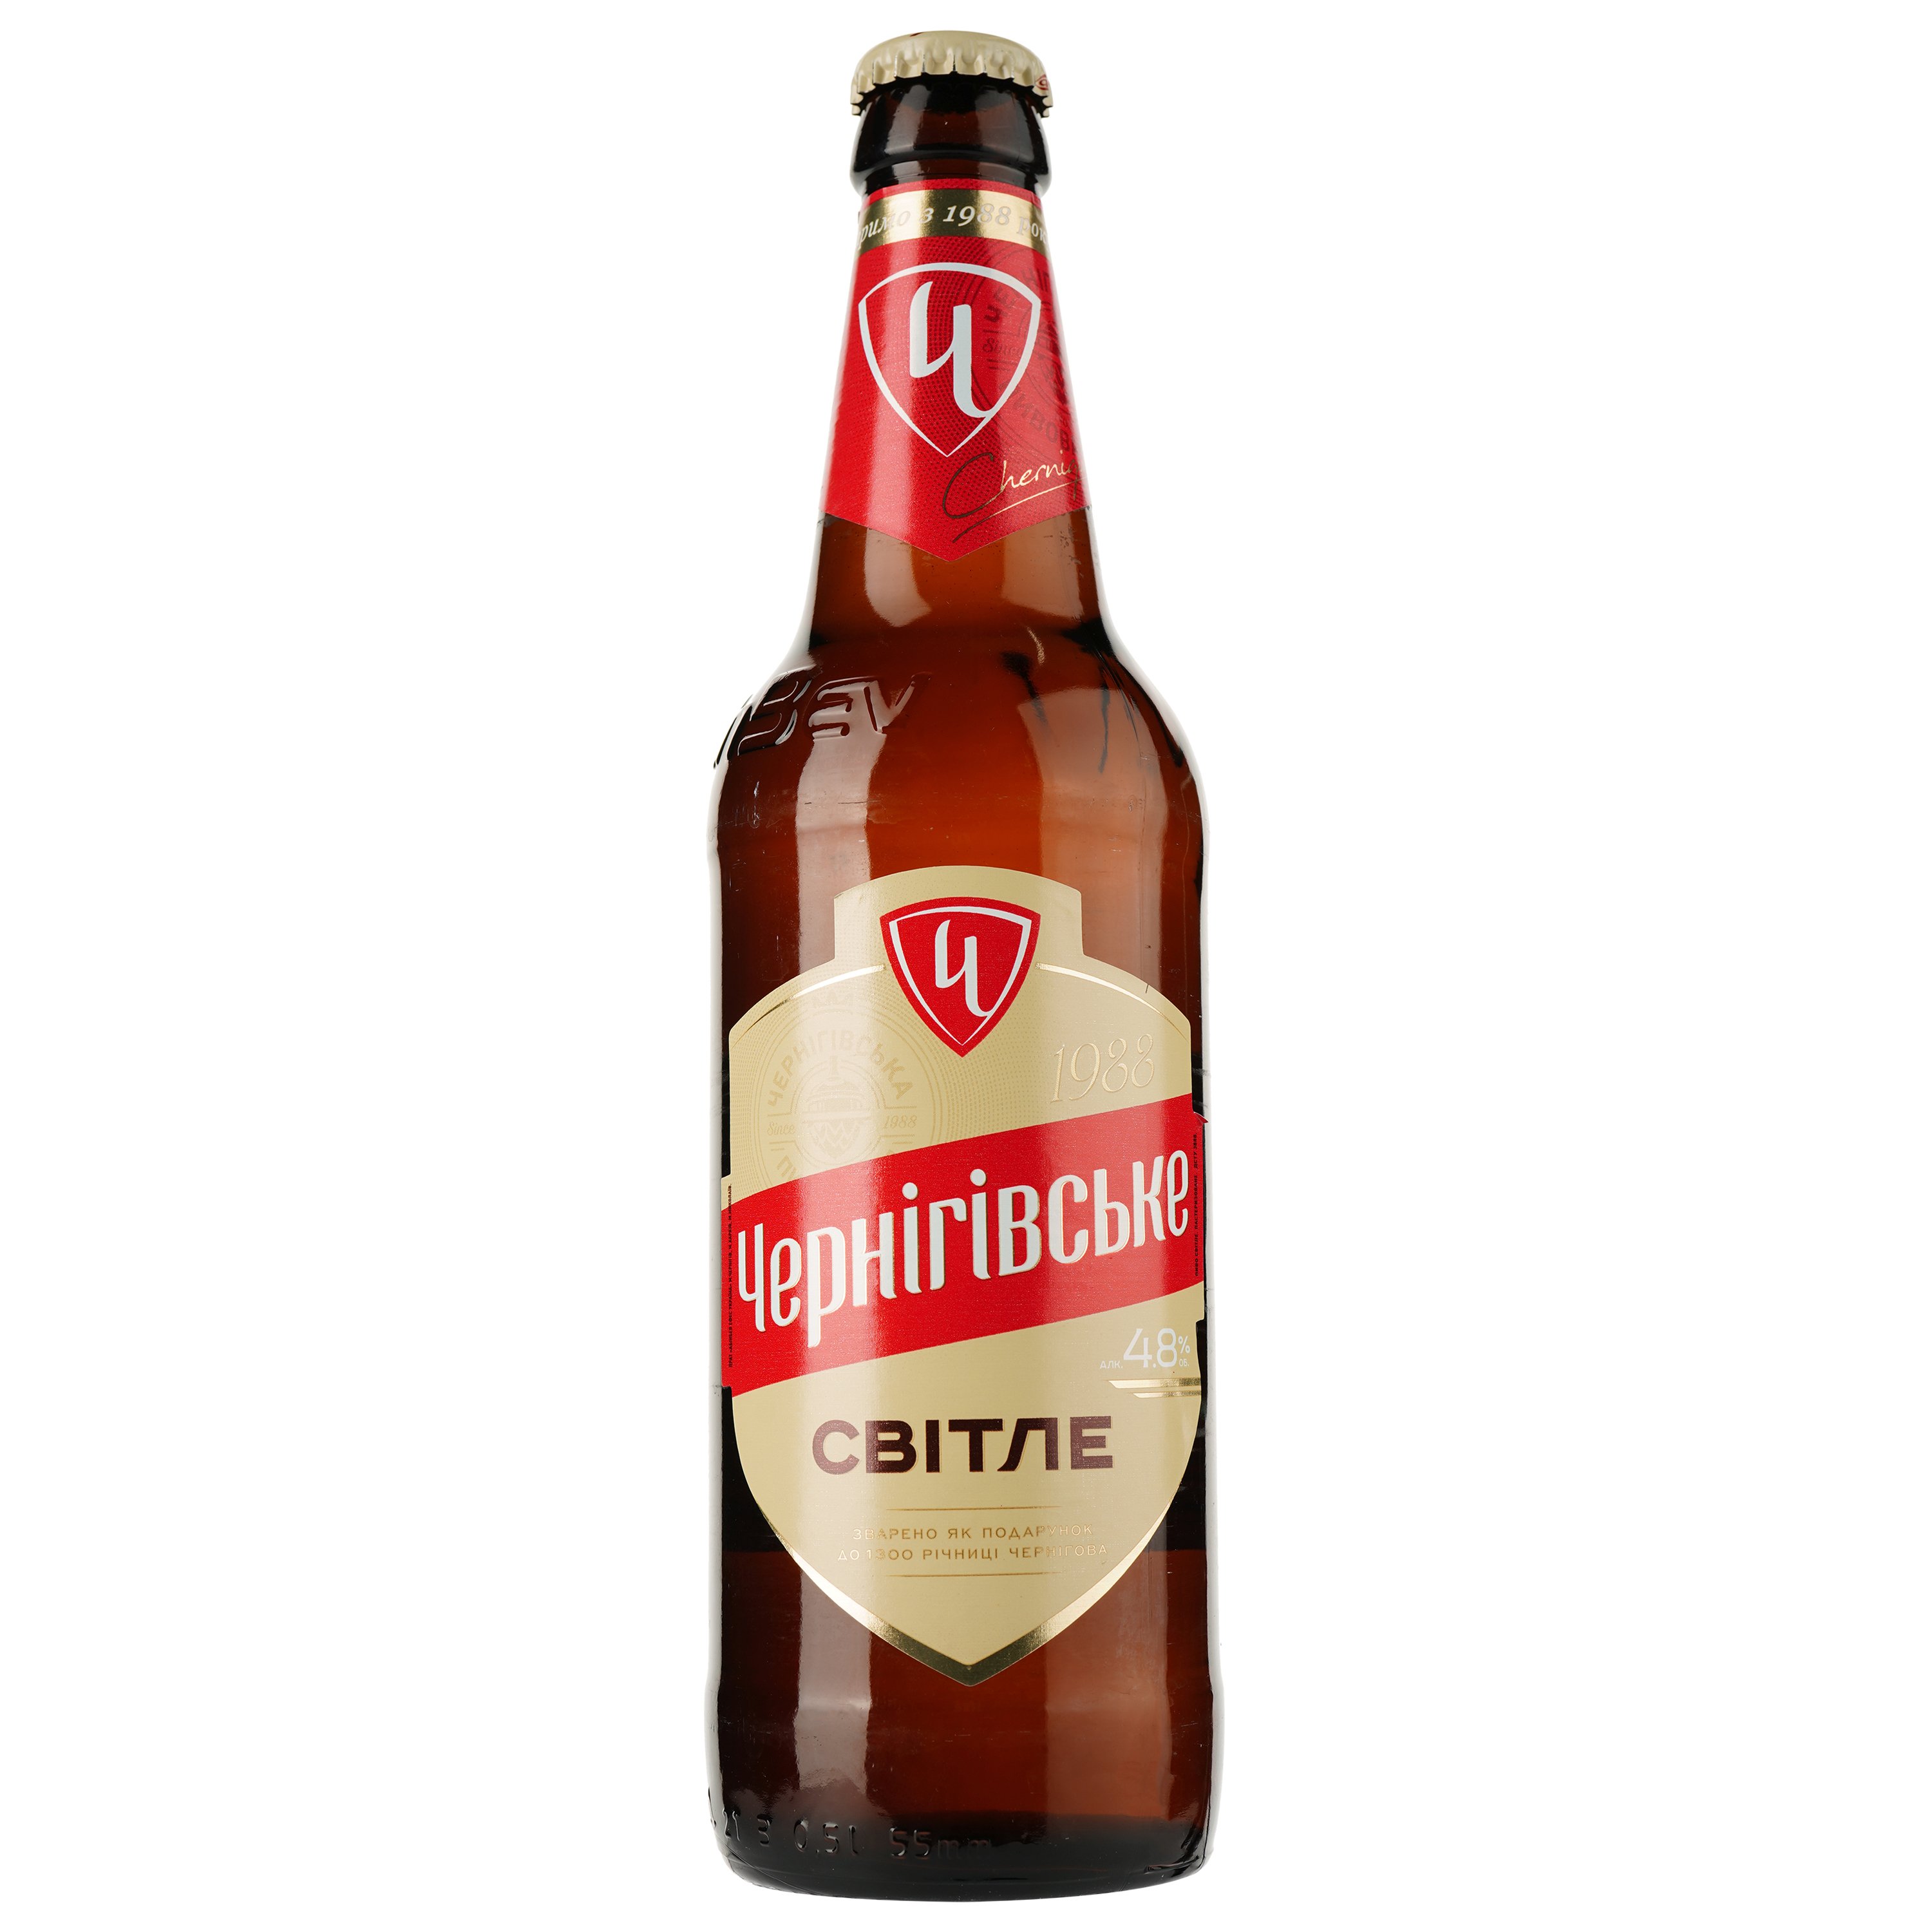 Пиво Чернігівське, светлое, фильтрованное, 4,6%, 0,5 л - фото 1